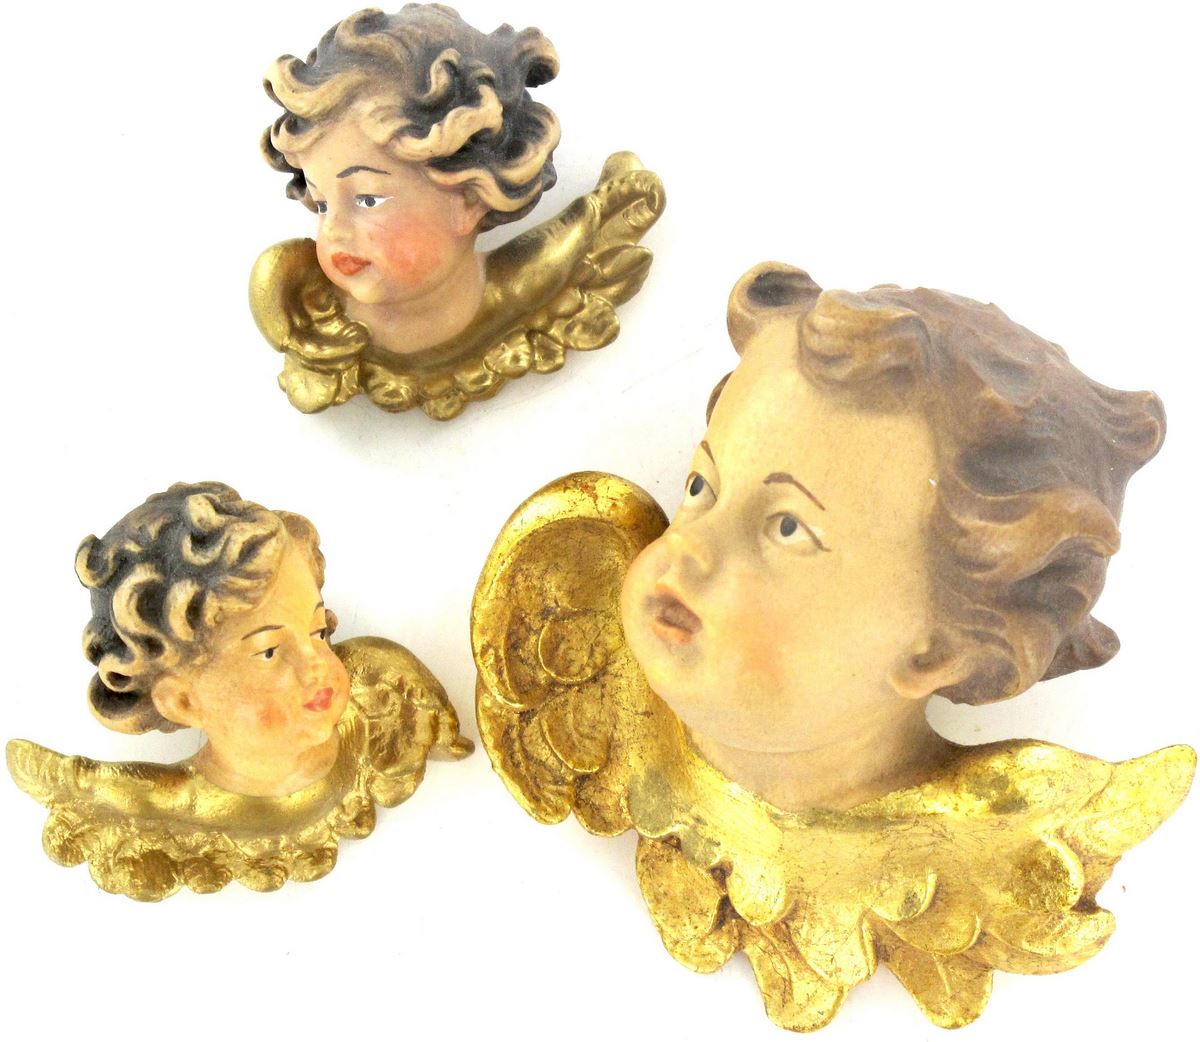 coppia testine angeli in legno d'acero dipinto a mano con finiture in oro zecchino - 5 cm